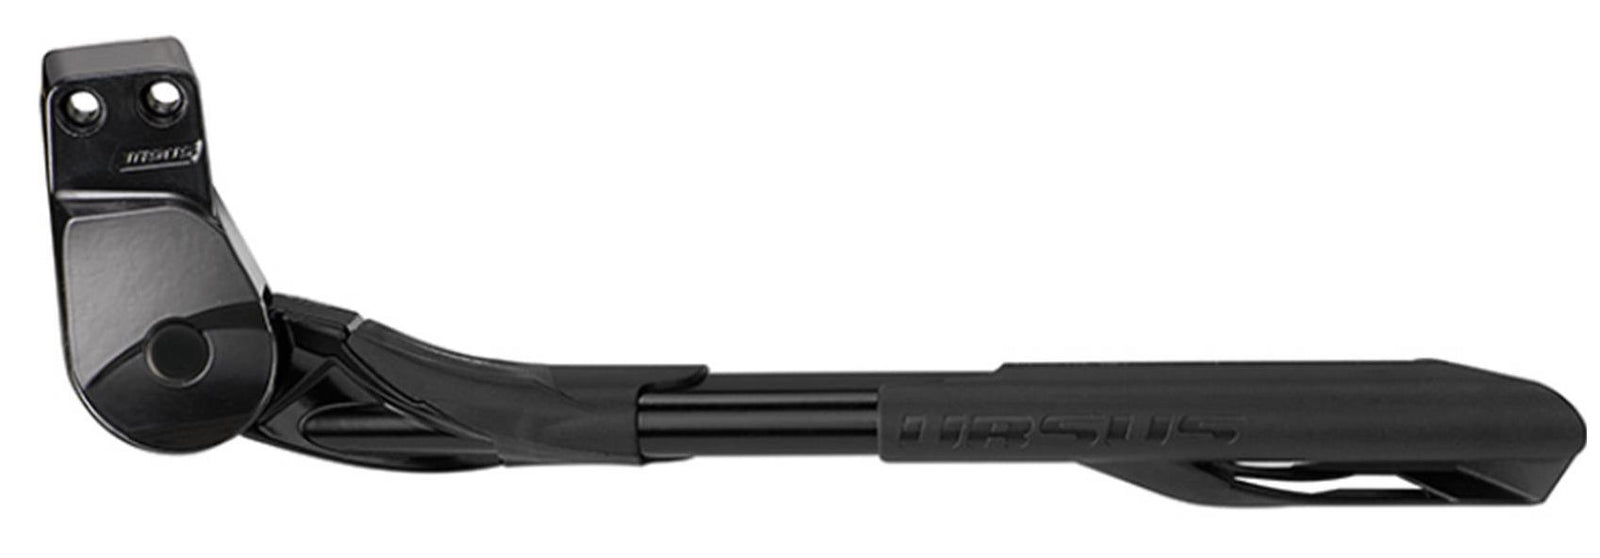 Ursus achterstandaard Wave 26-28 18mm verstelbaar zwart